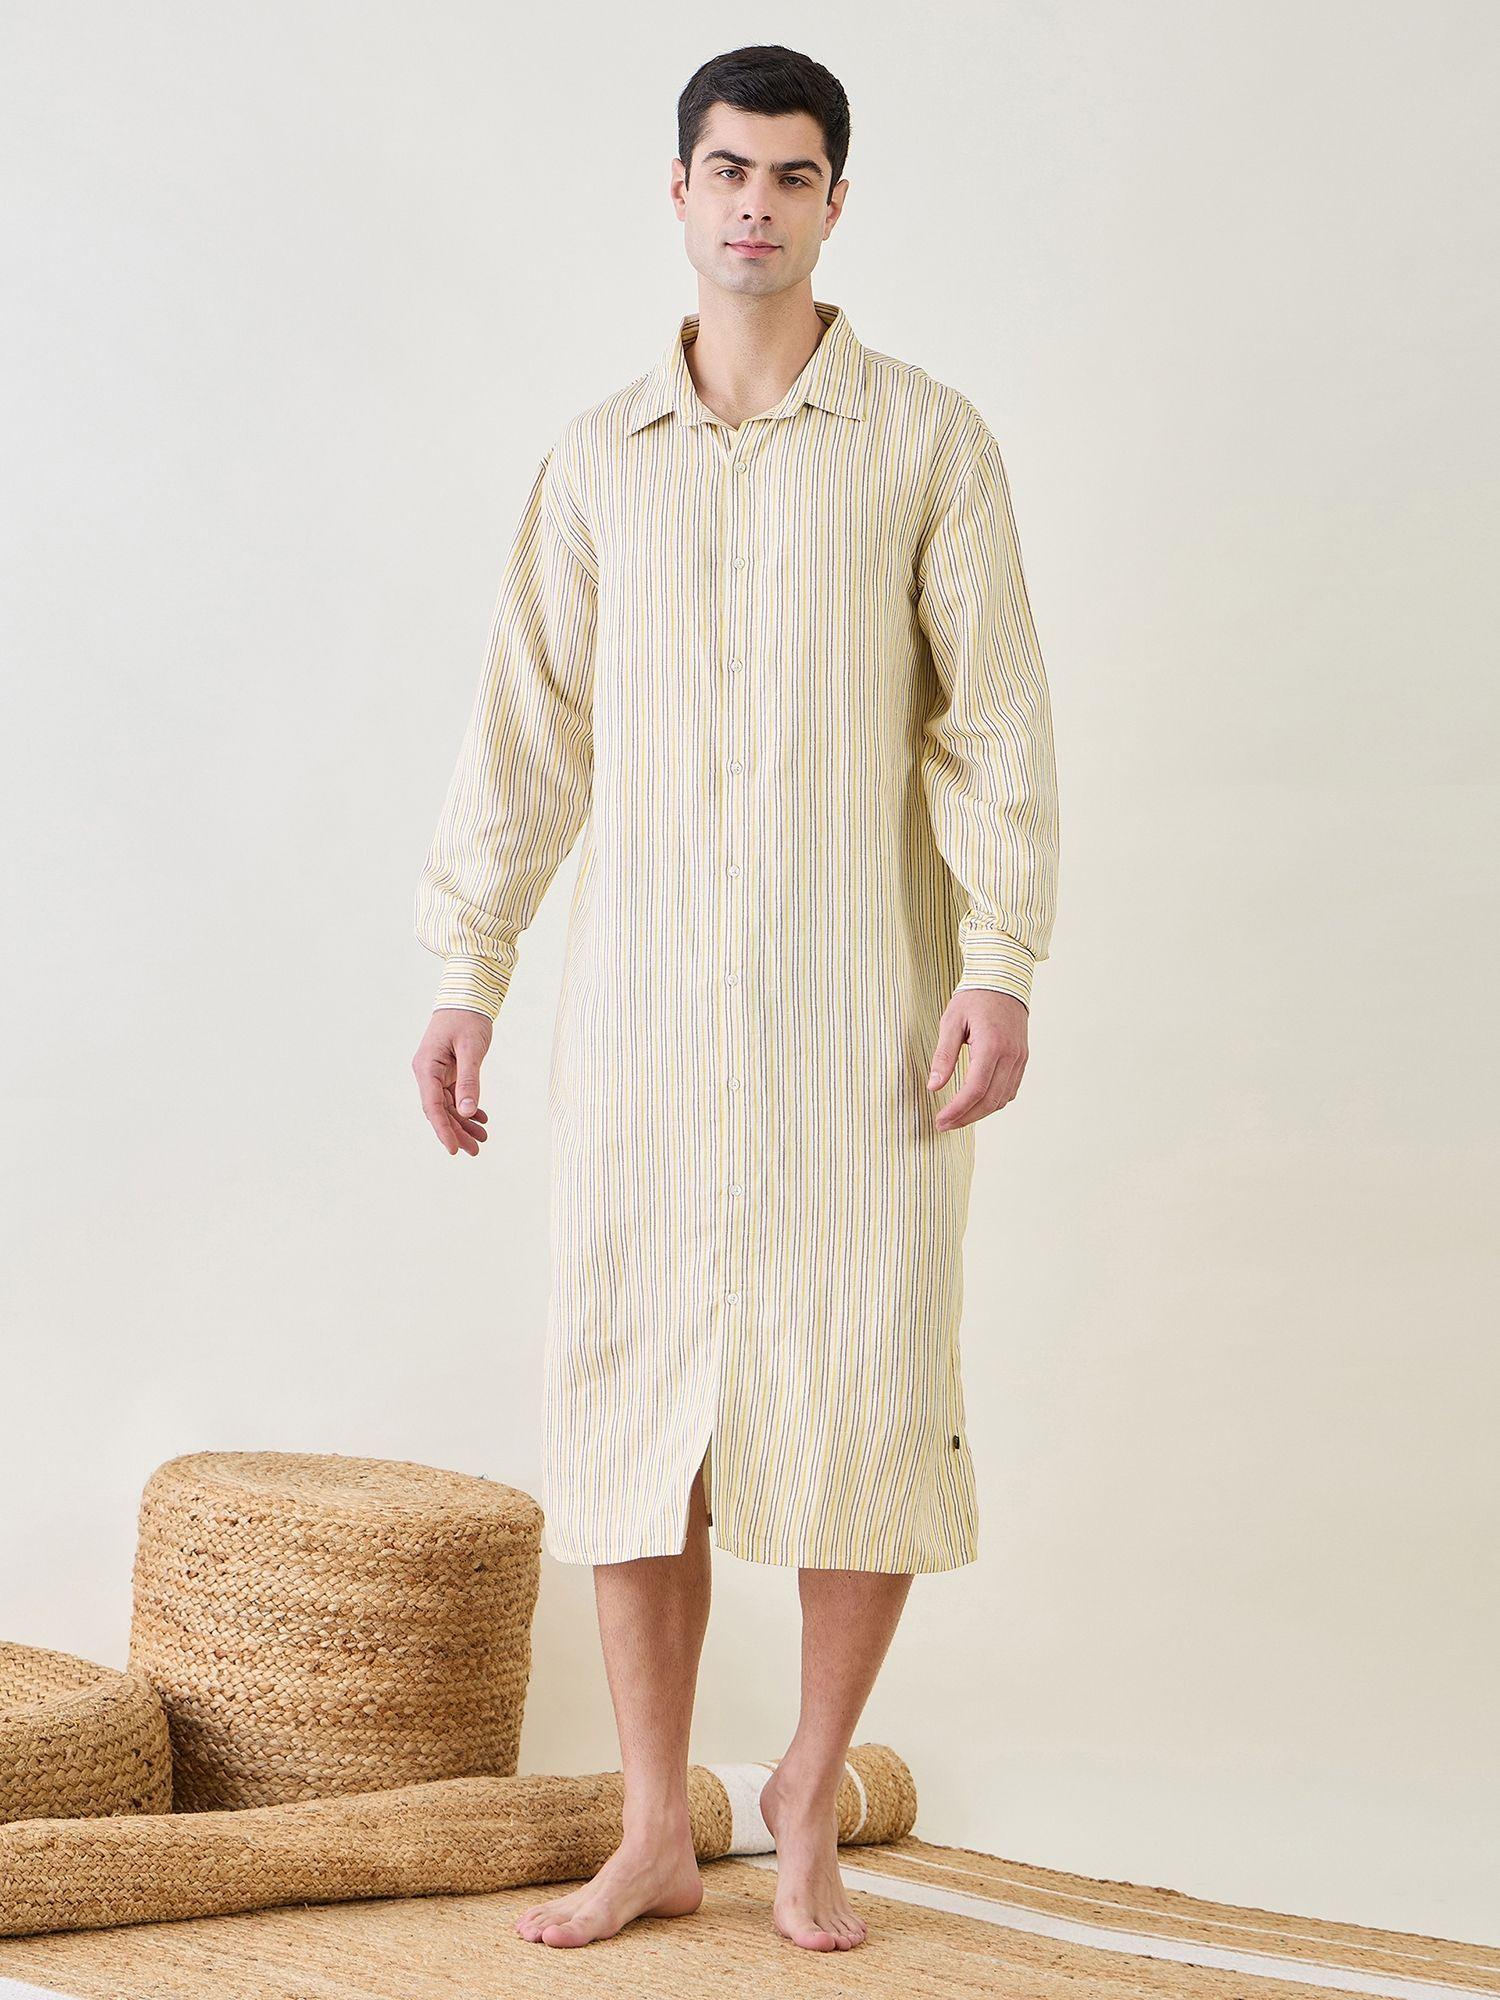 mens linen button down shirt nightdress